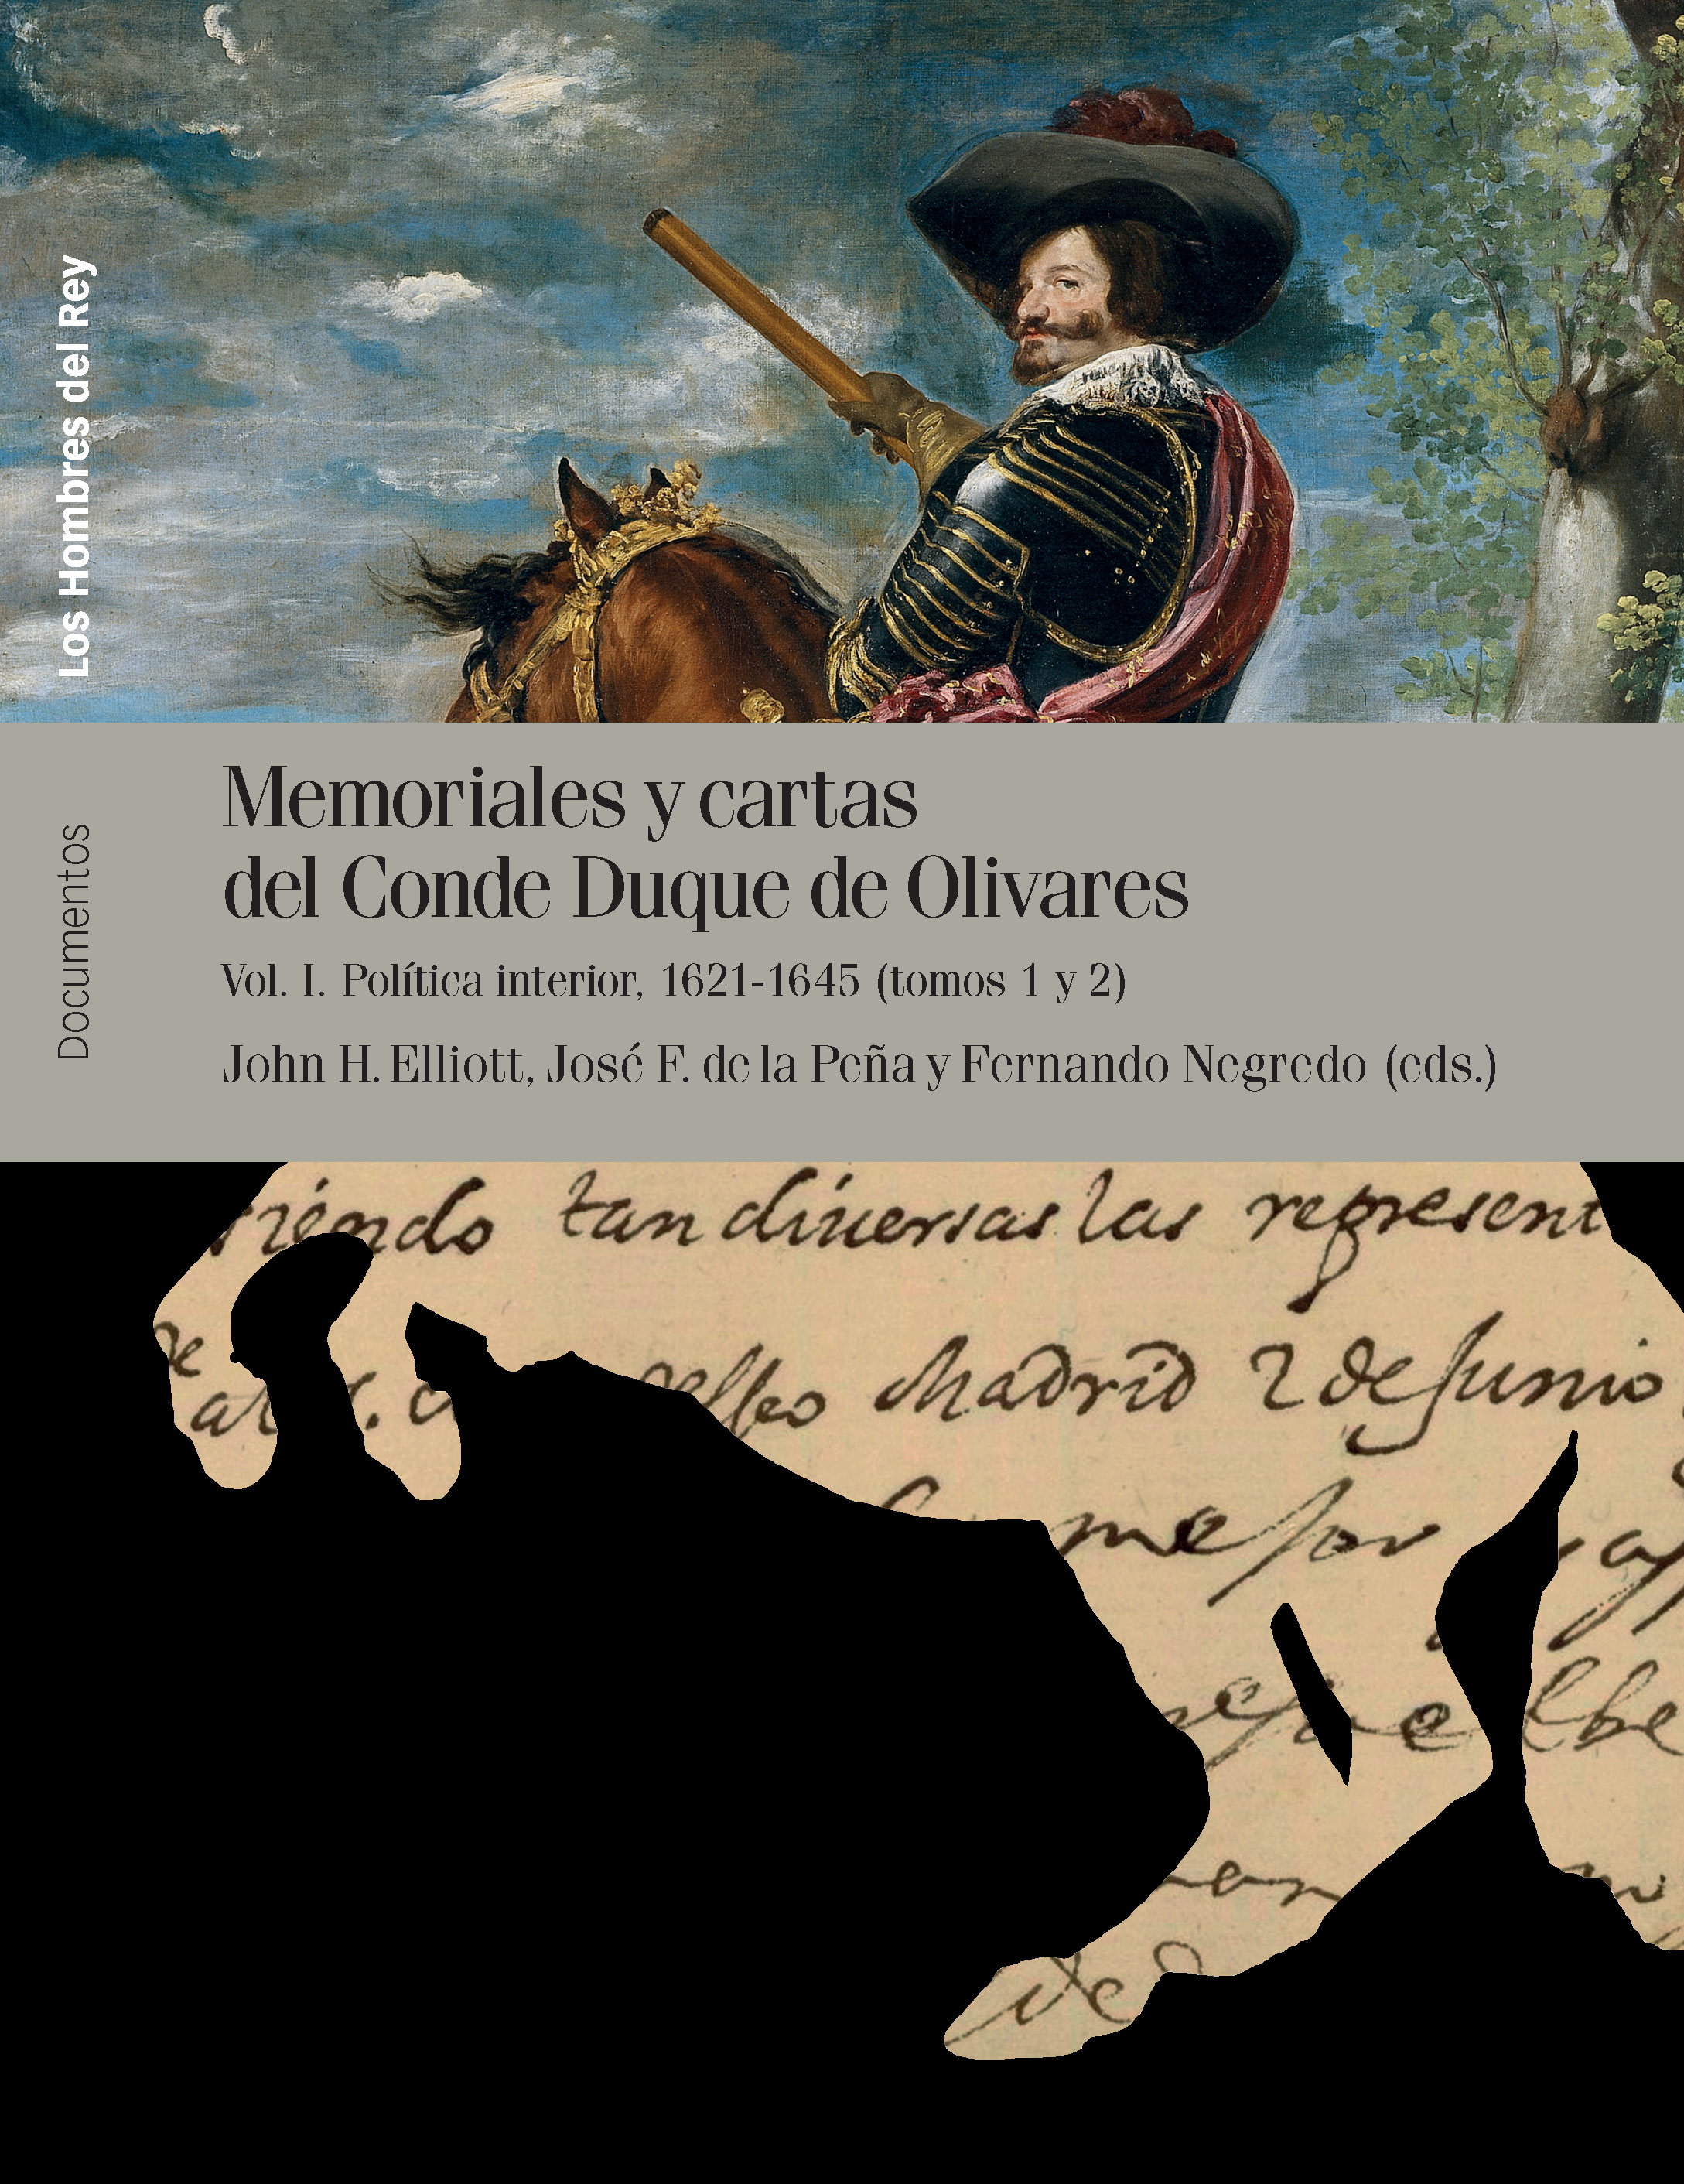 Memoriales y cartas del Conde Duque de Olivares